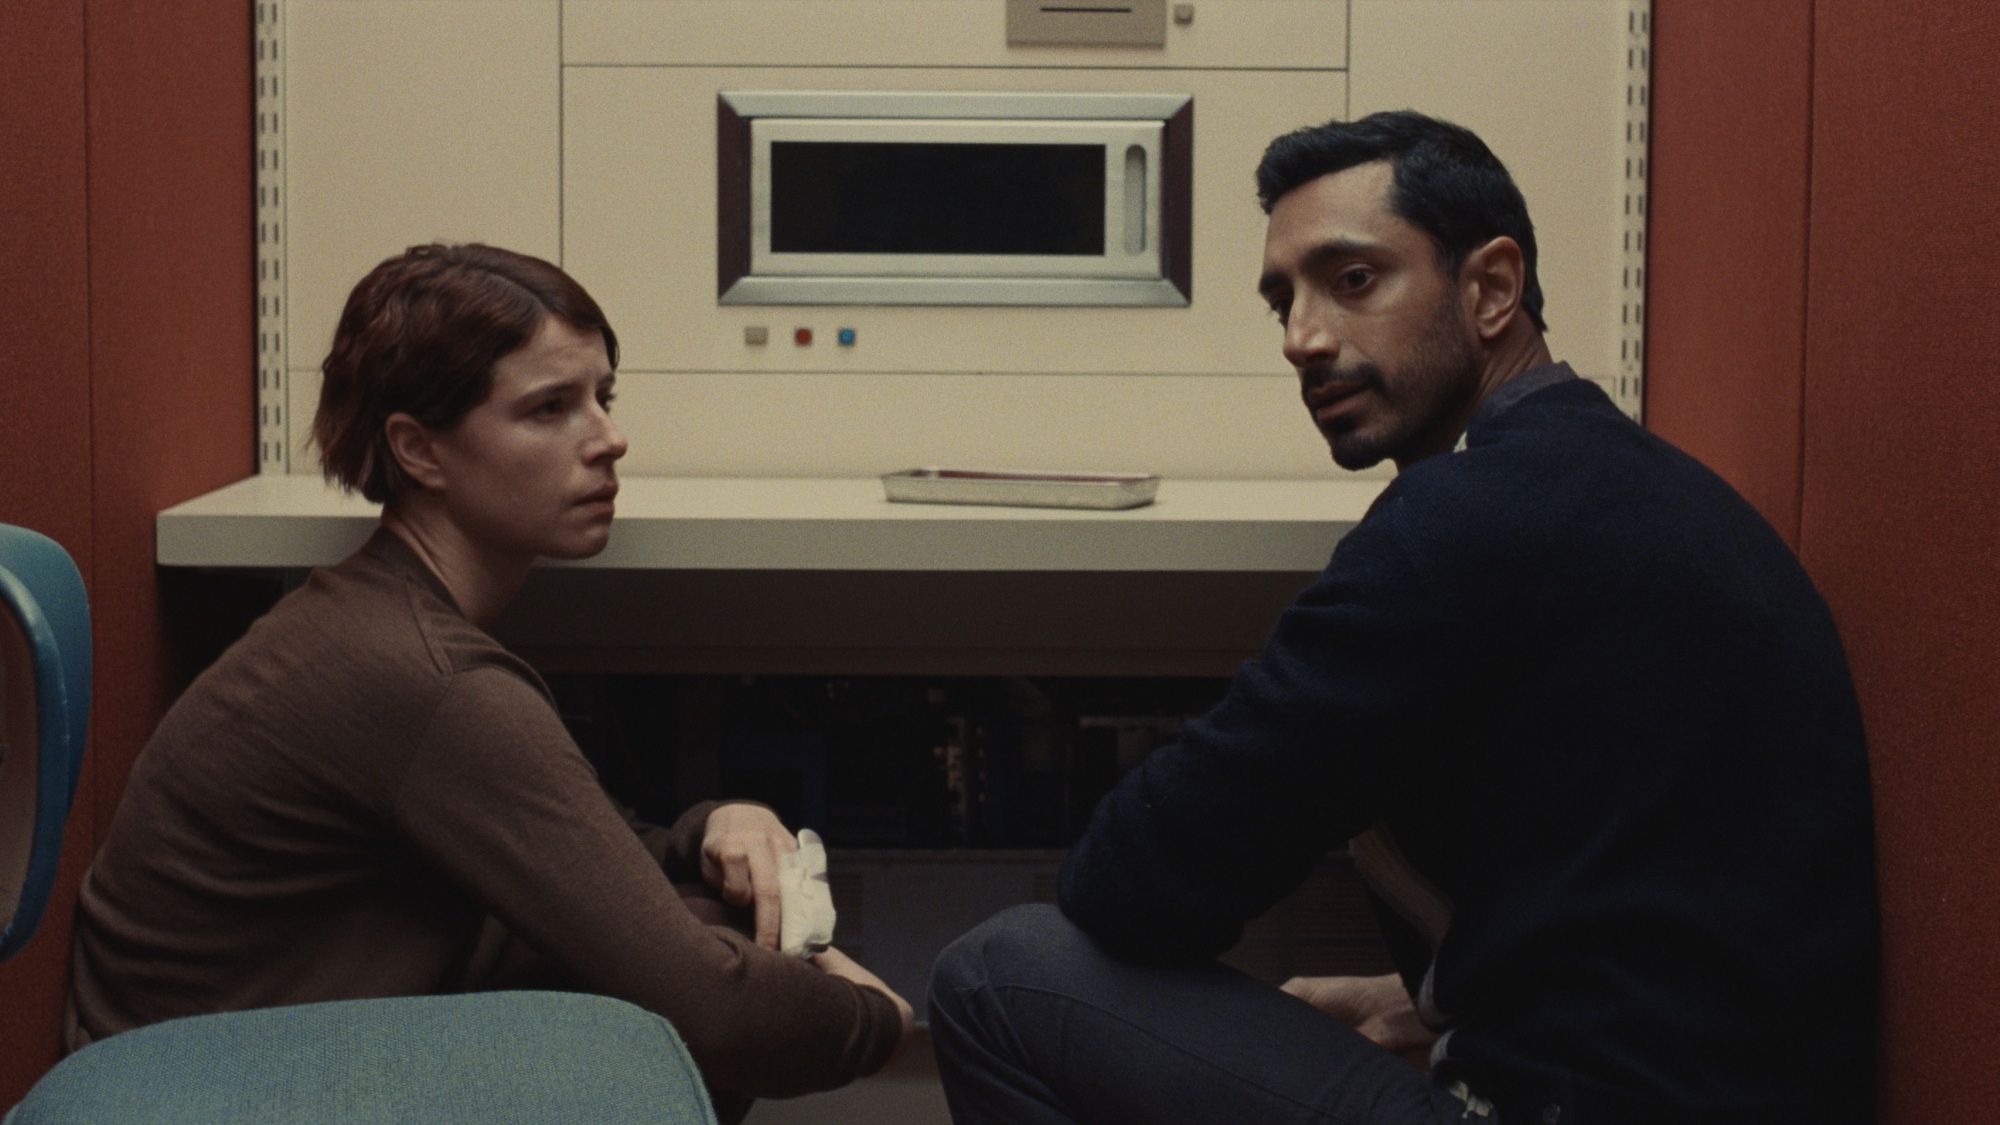 Un homme et une femme dans une pièce rouge, regardant une machine futuriste qui ressemble à un micro-ondes.